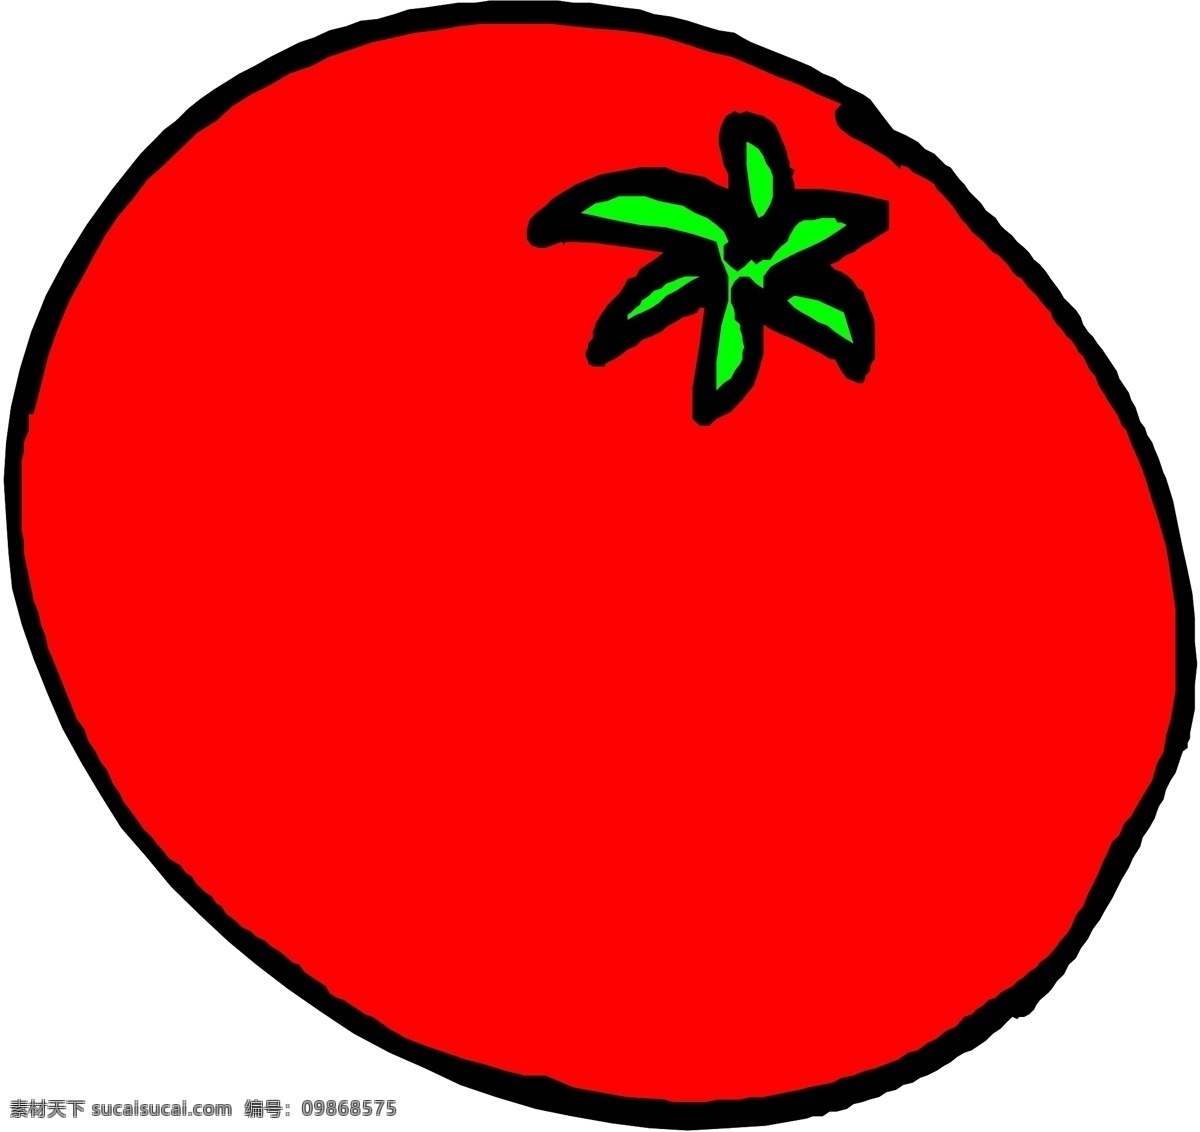 番茄 矢量图 其他矢量图